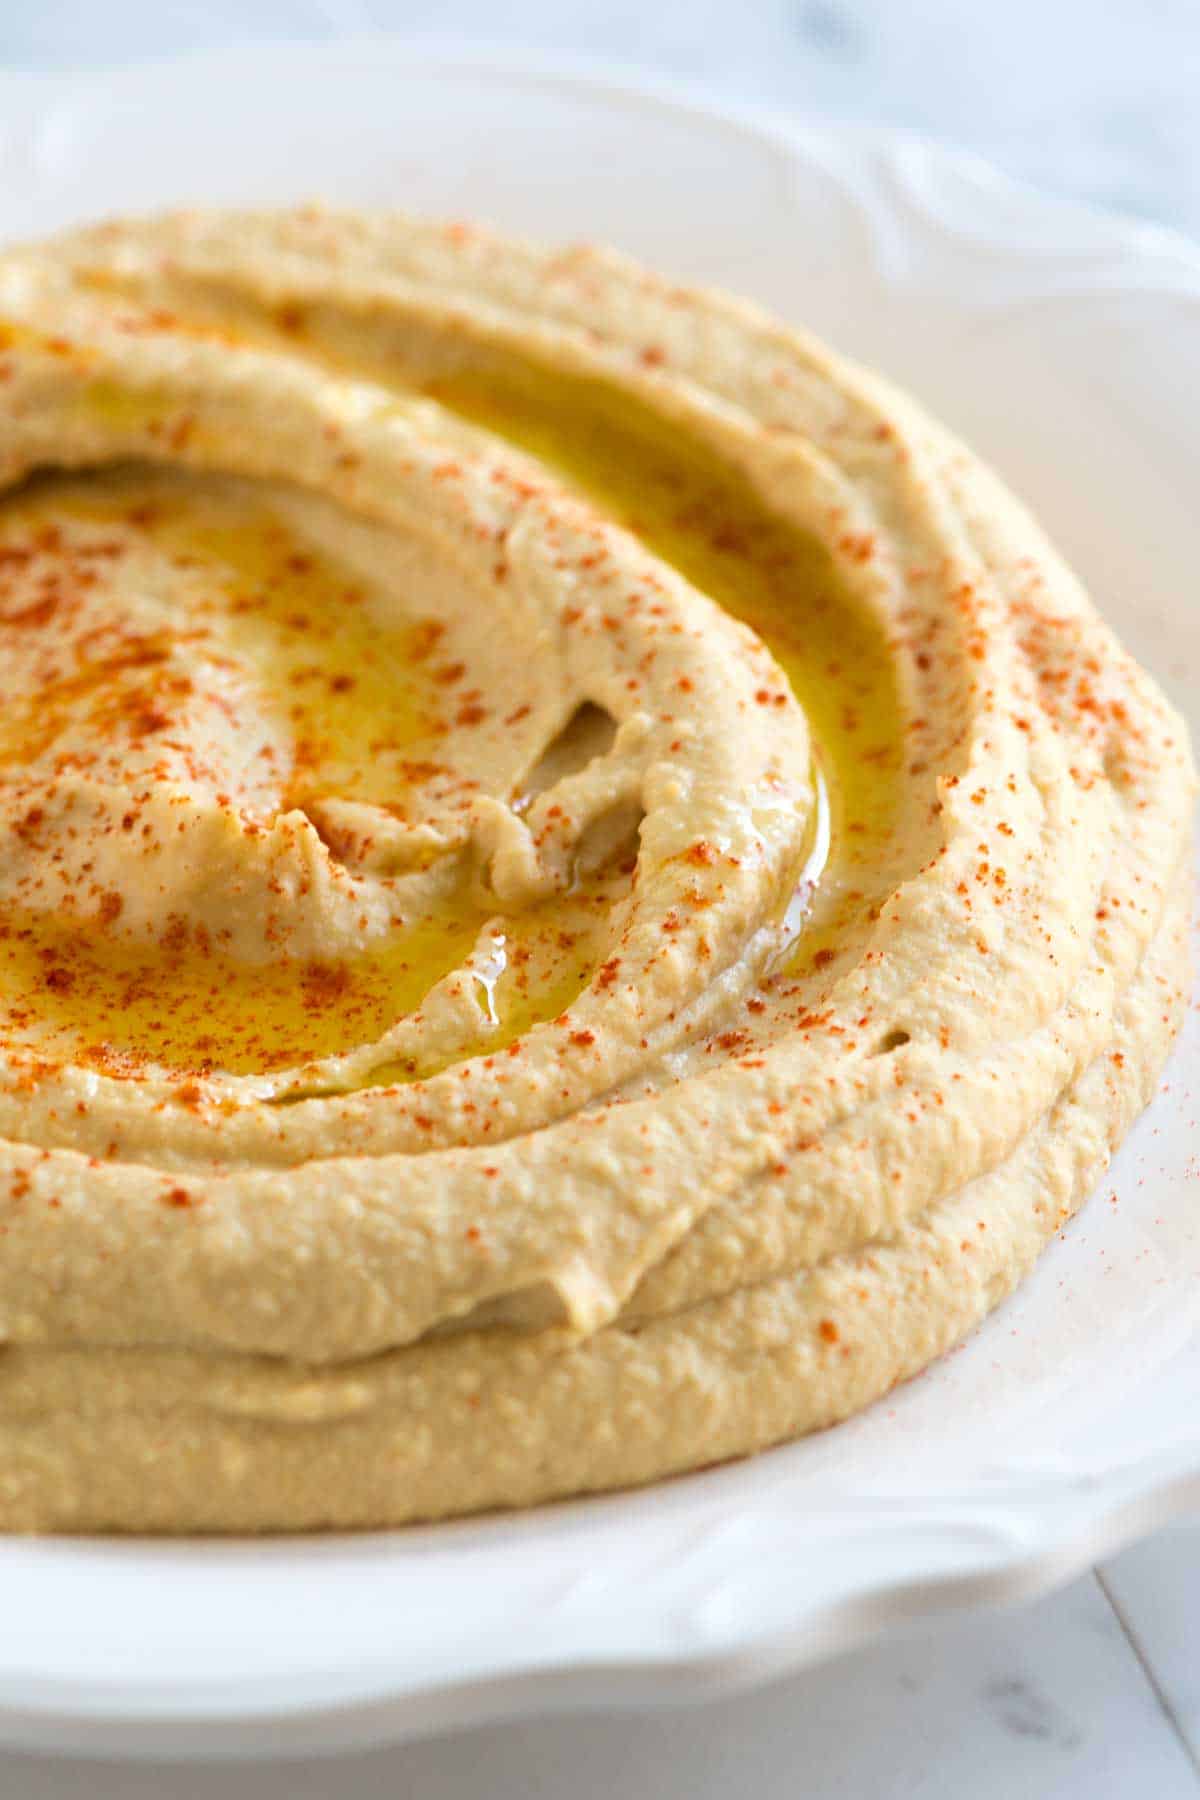 How-to-Make-Homemade-Hummus-1200.jpg